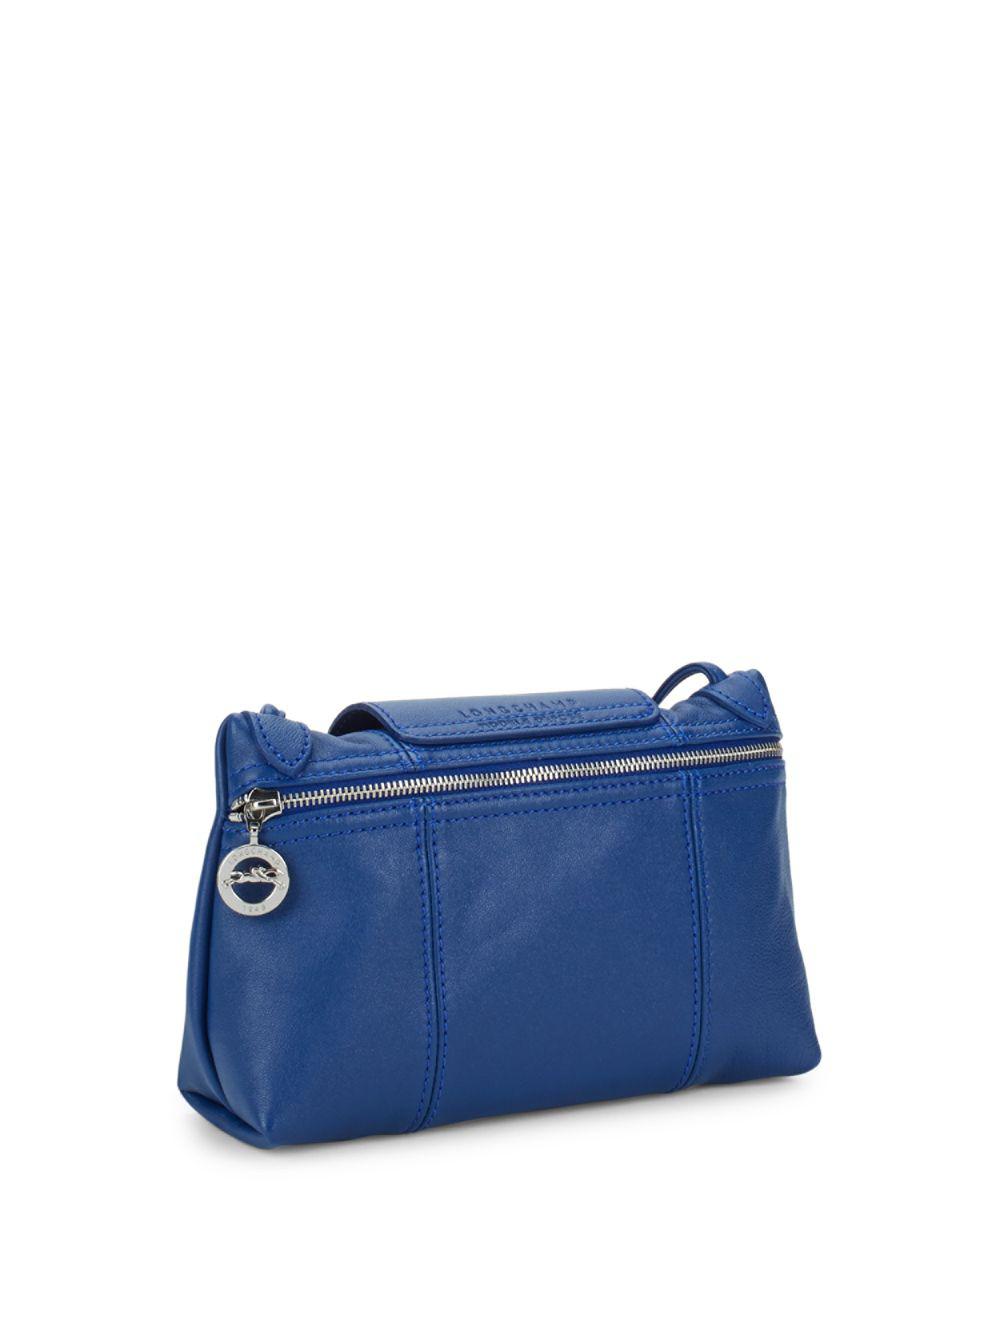 Longchamp Le Pliage Cuir Crossbody Bag in Blue | Lyst